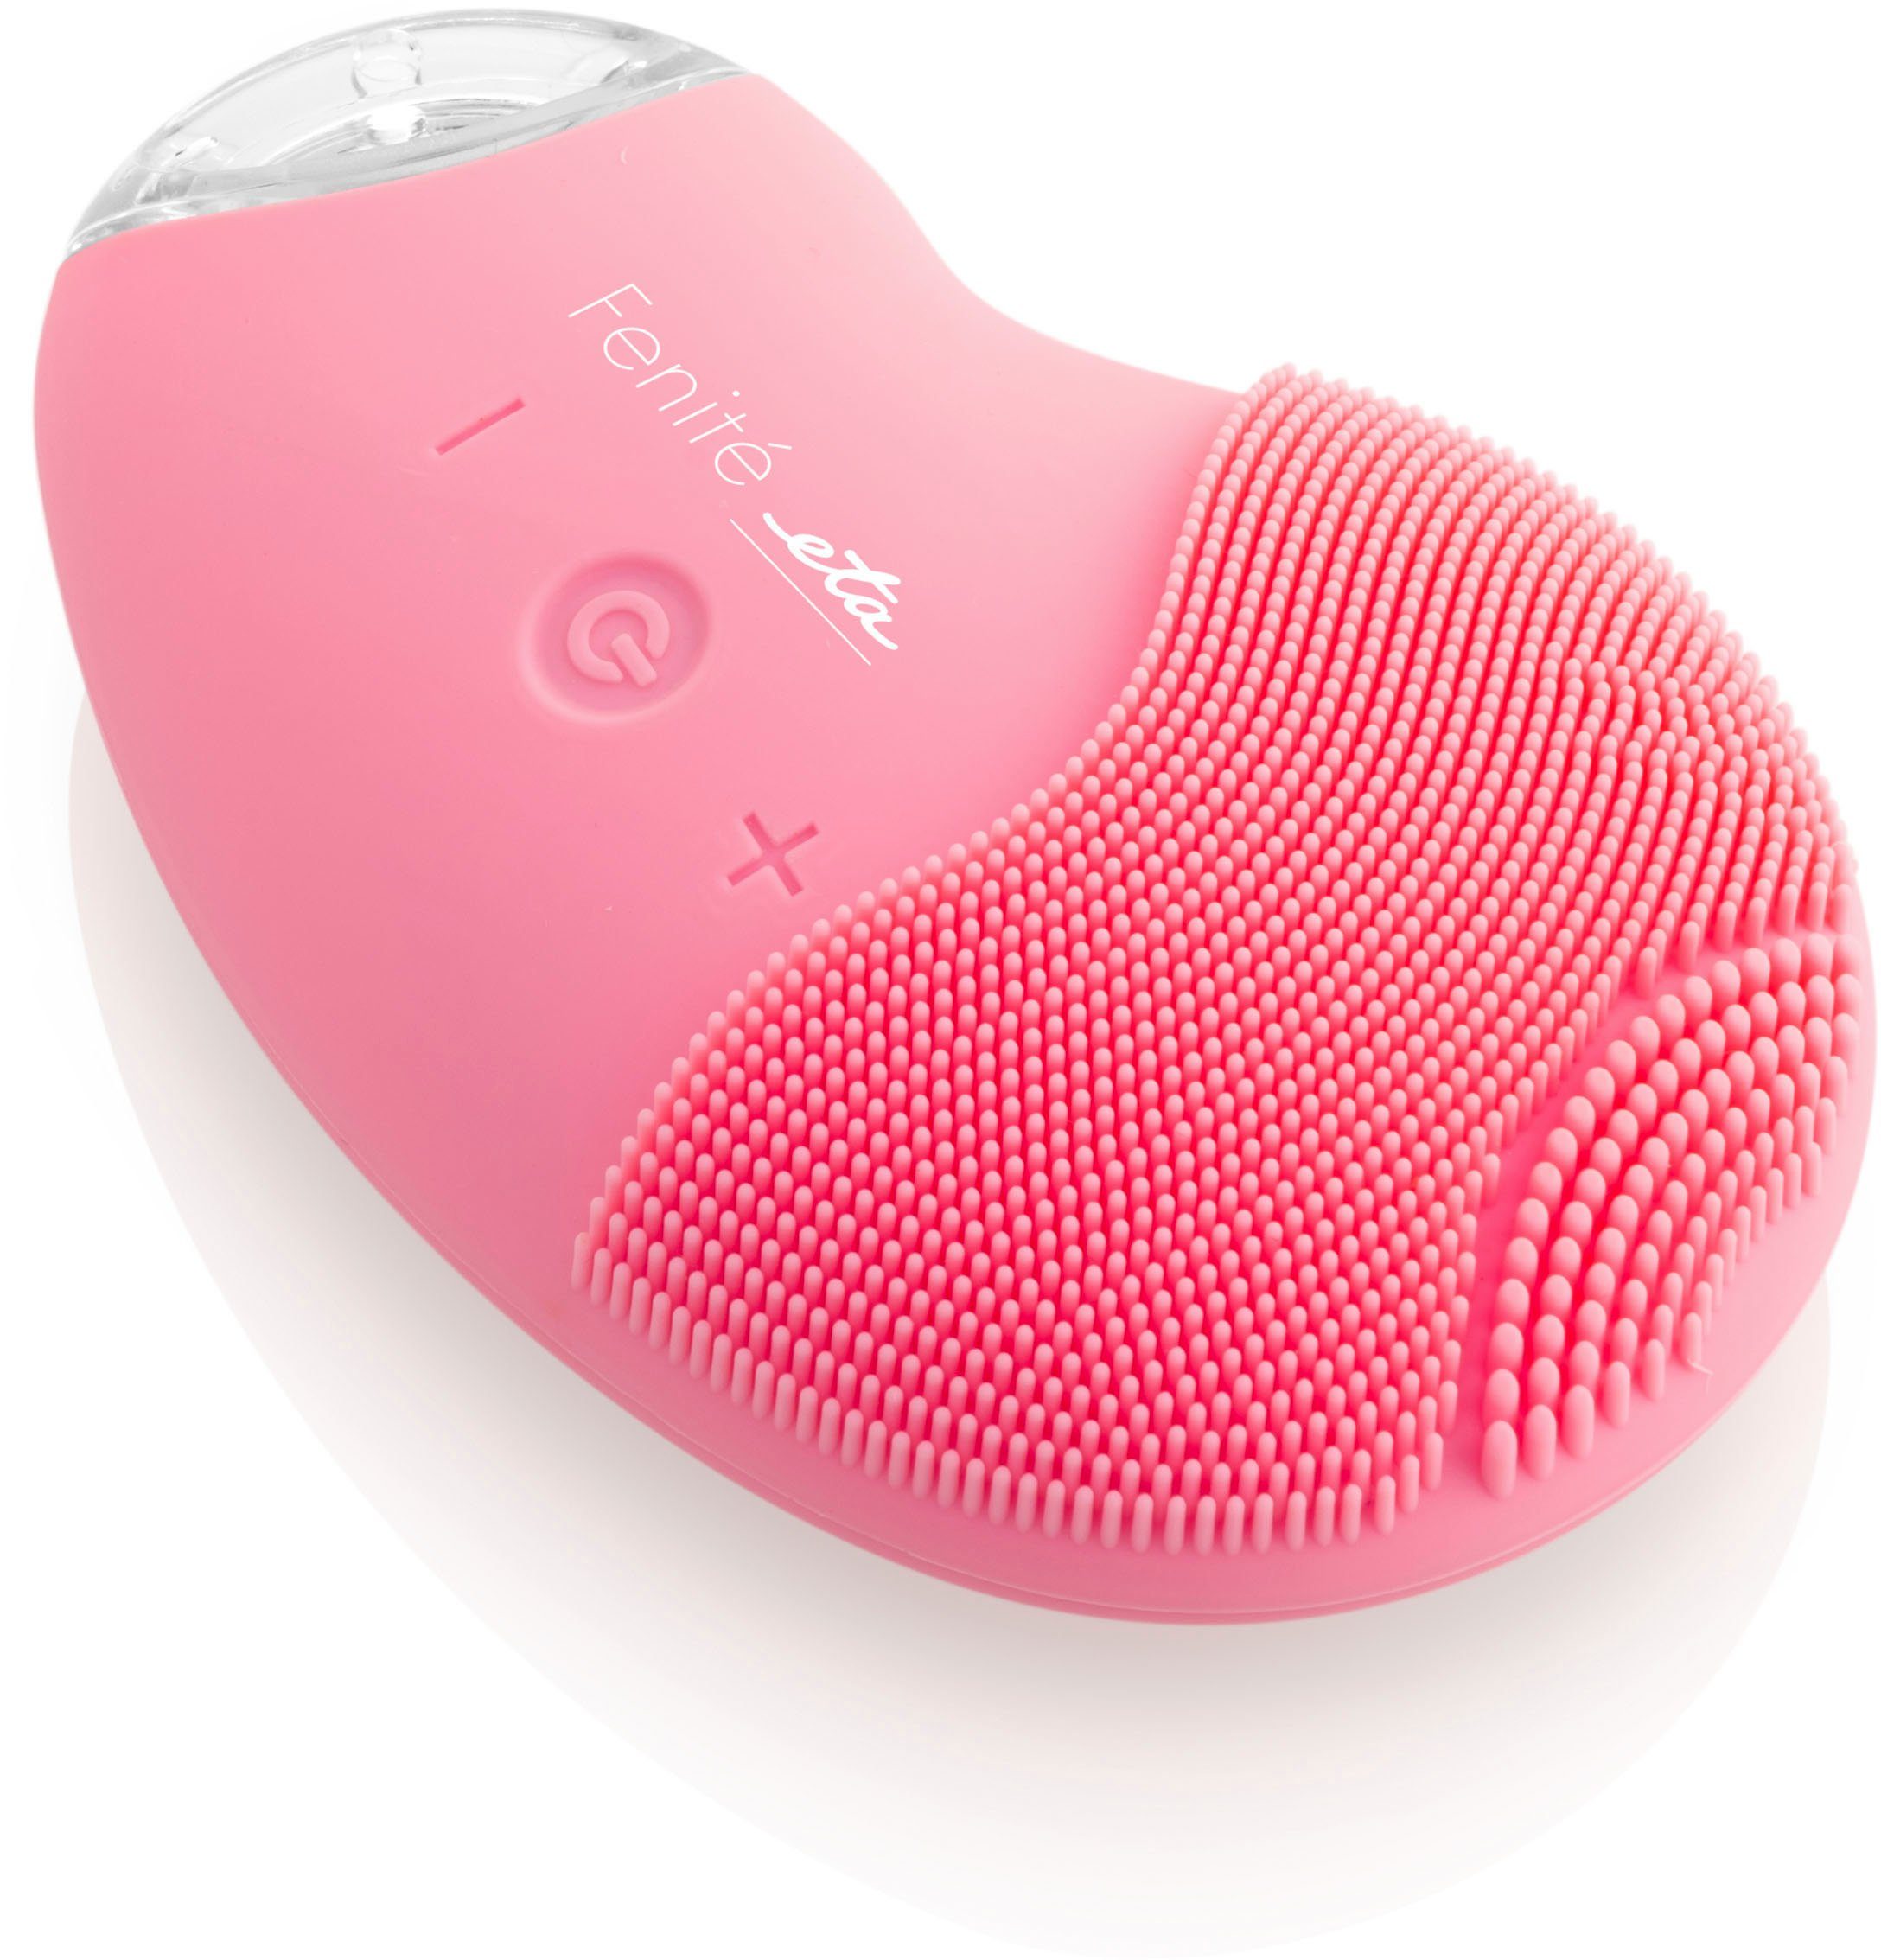 Gesichtsbürste eta FENITÉ rosa ETA235290010, Elektrische Gesichtsreinigungsbürste Ultraschall